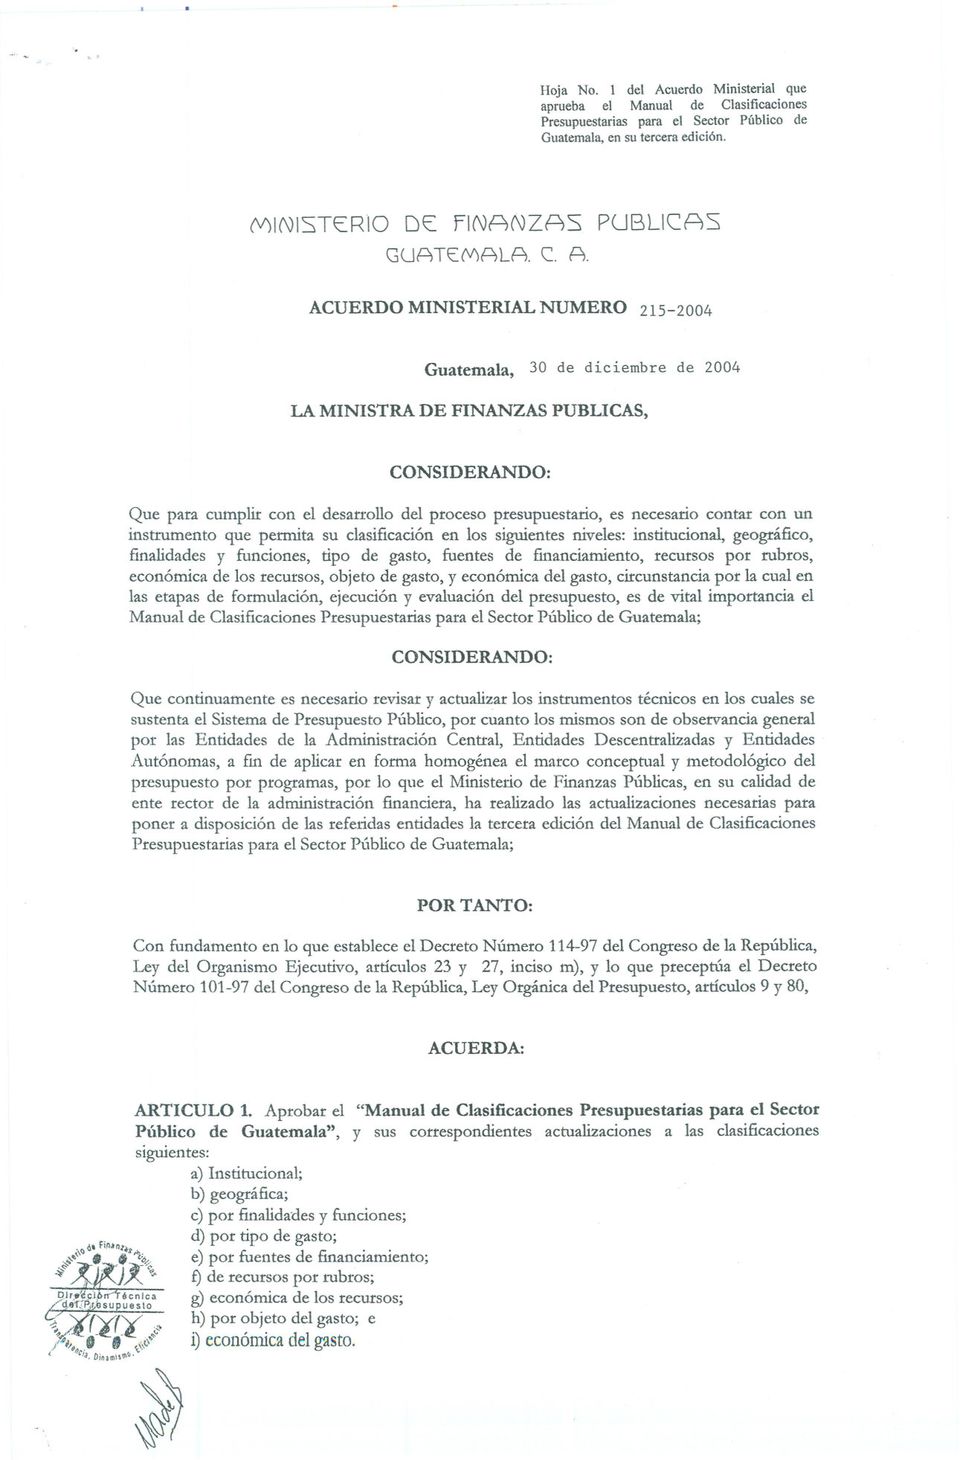 ACUERDO MINISTERIAL NUMERO 215-2004 Guatemala, 30 de diciembrede 2004 LA MINISTRA DE FINANZAS PUBLICAS, CONSIDERANDO: Que para cumplir con el desarrollo del proceso presupuestario, es necesario